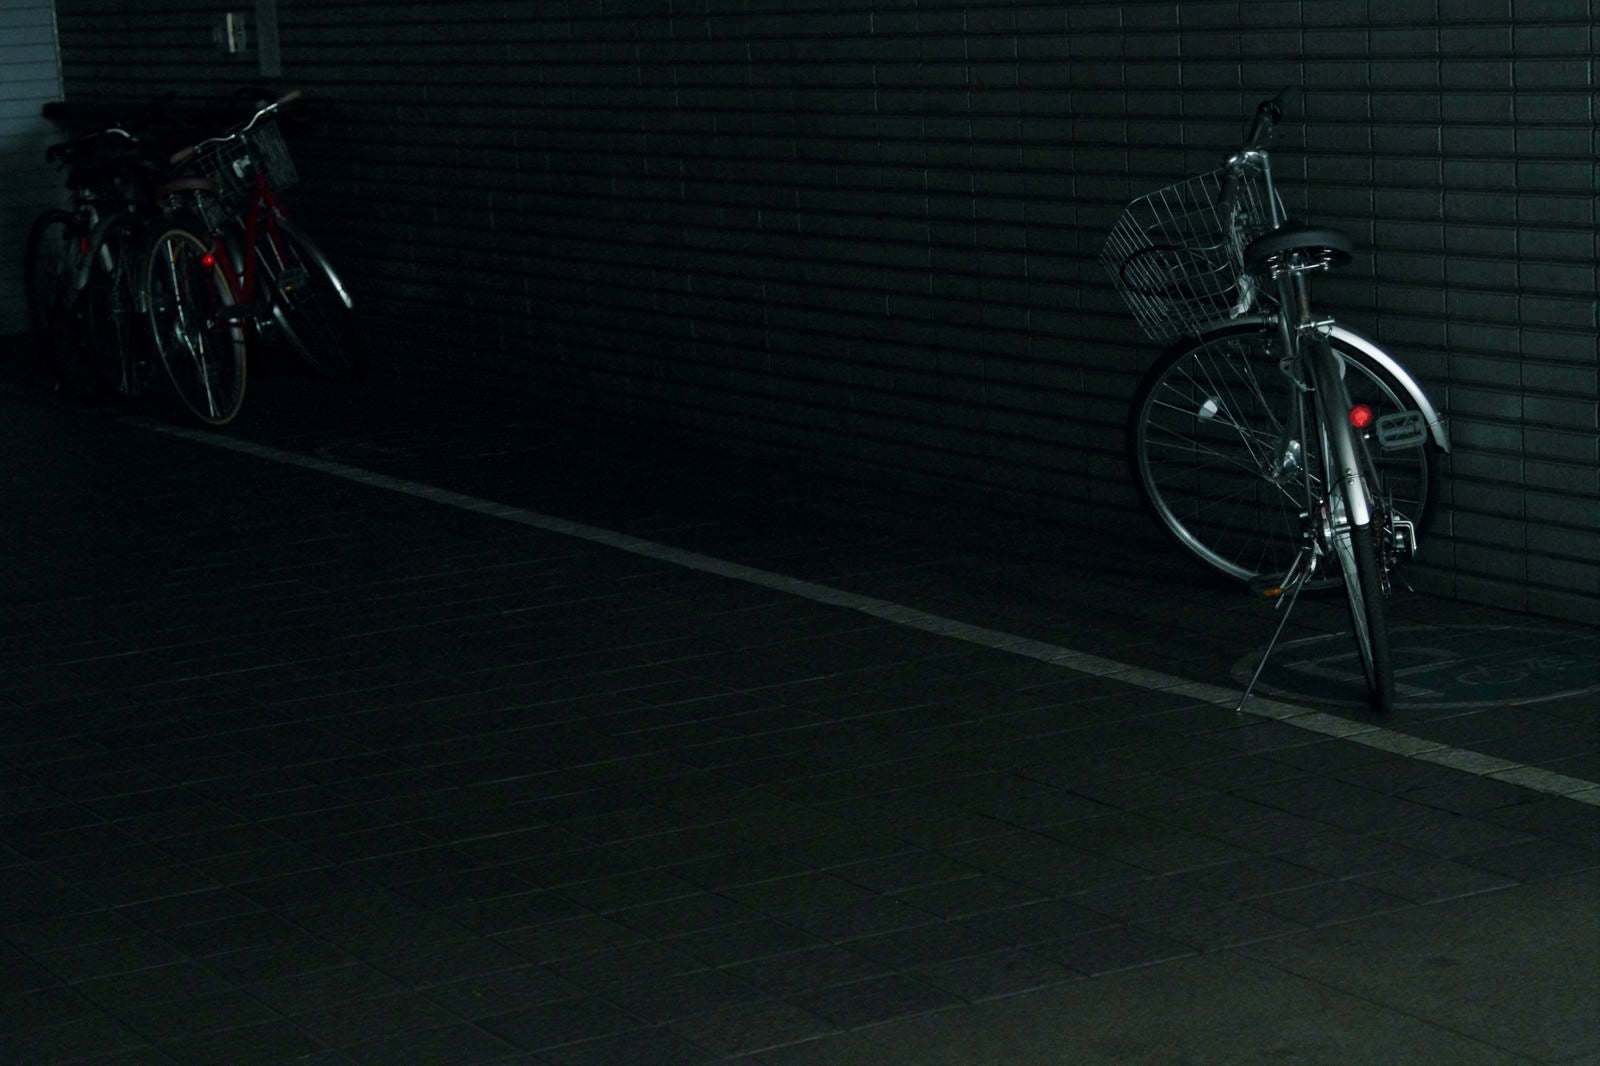 「暗い駐輪場の自転車」の写真